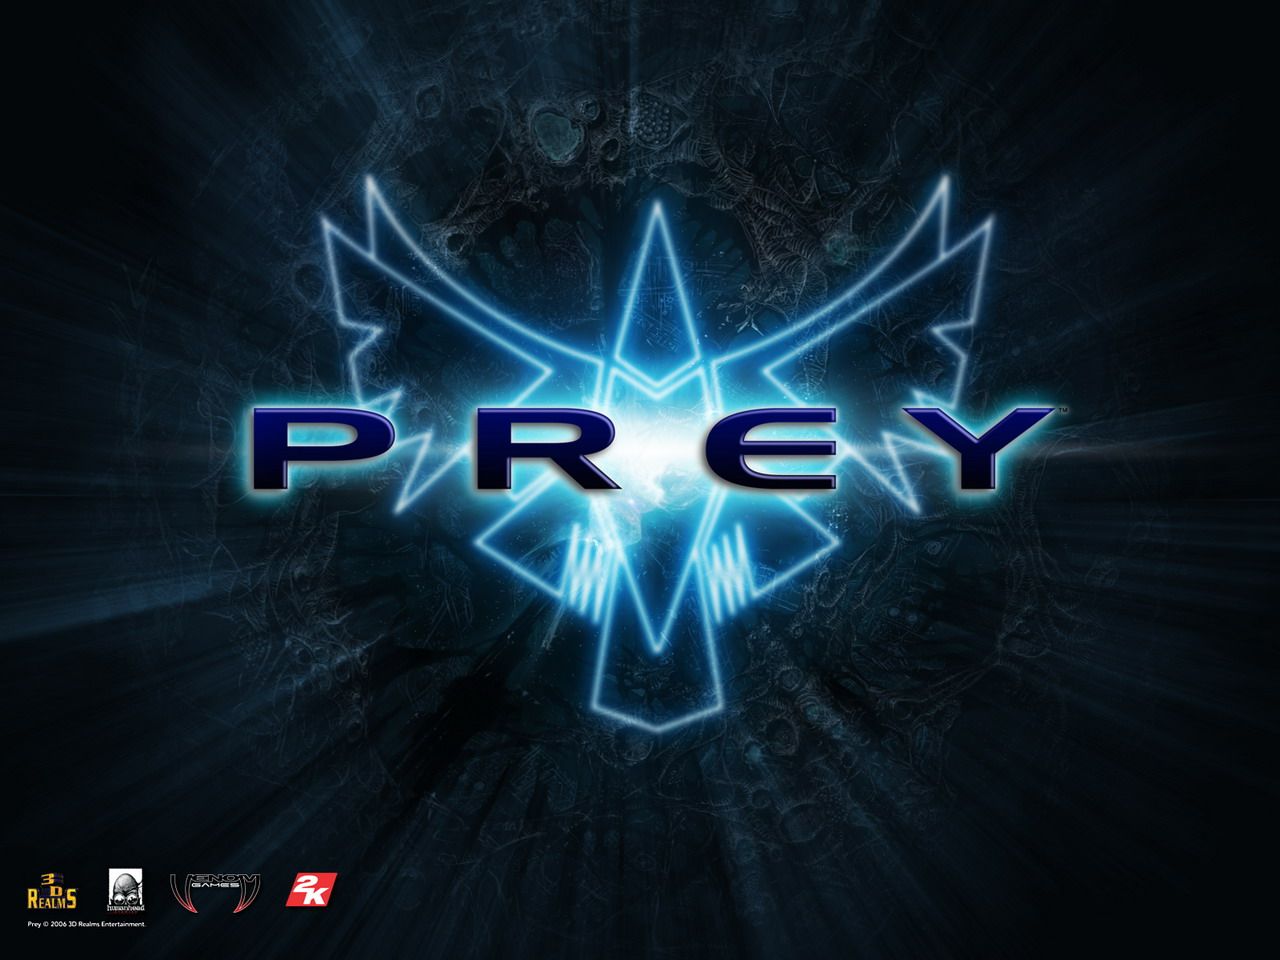 Free download Prey Game Logo wallpaper 1280x960 27804 1280x960